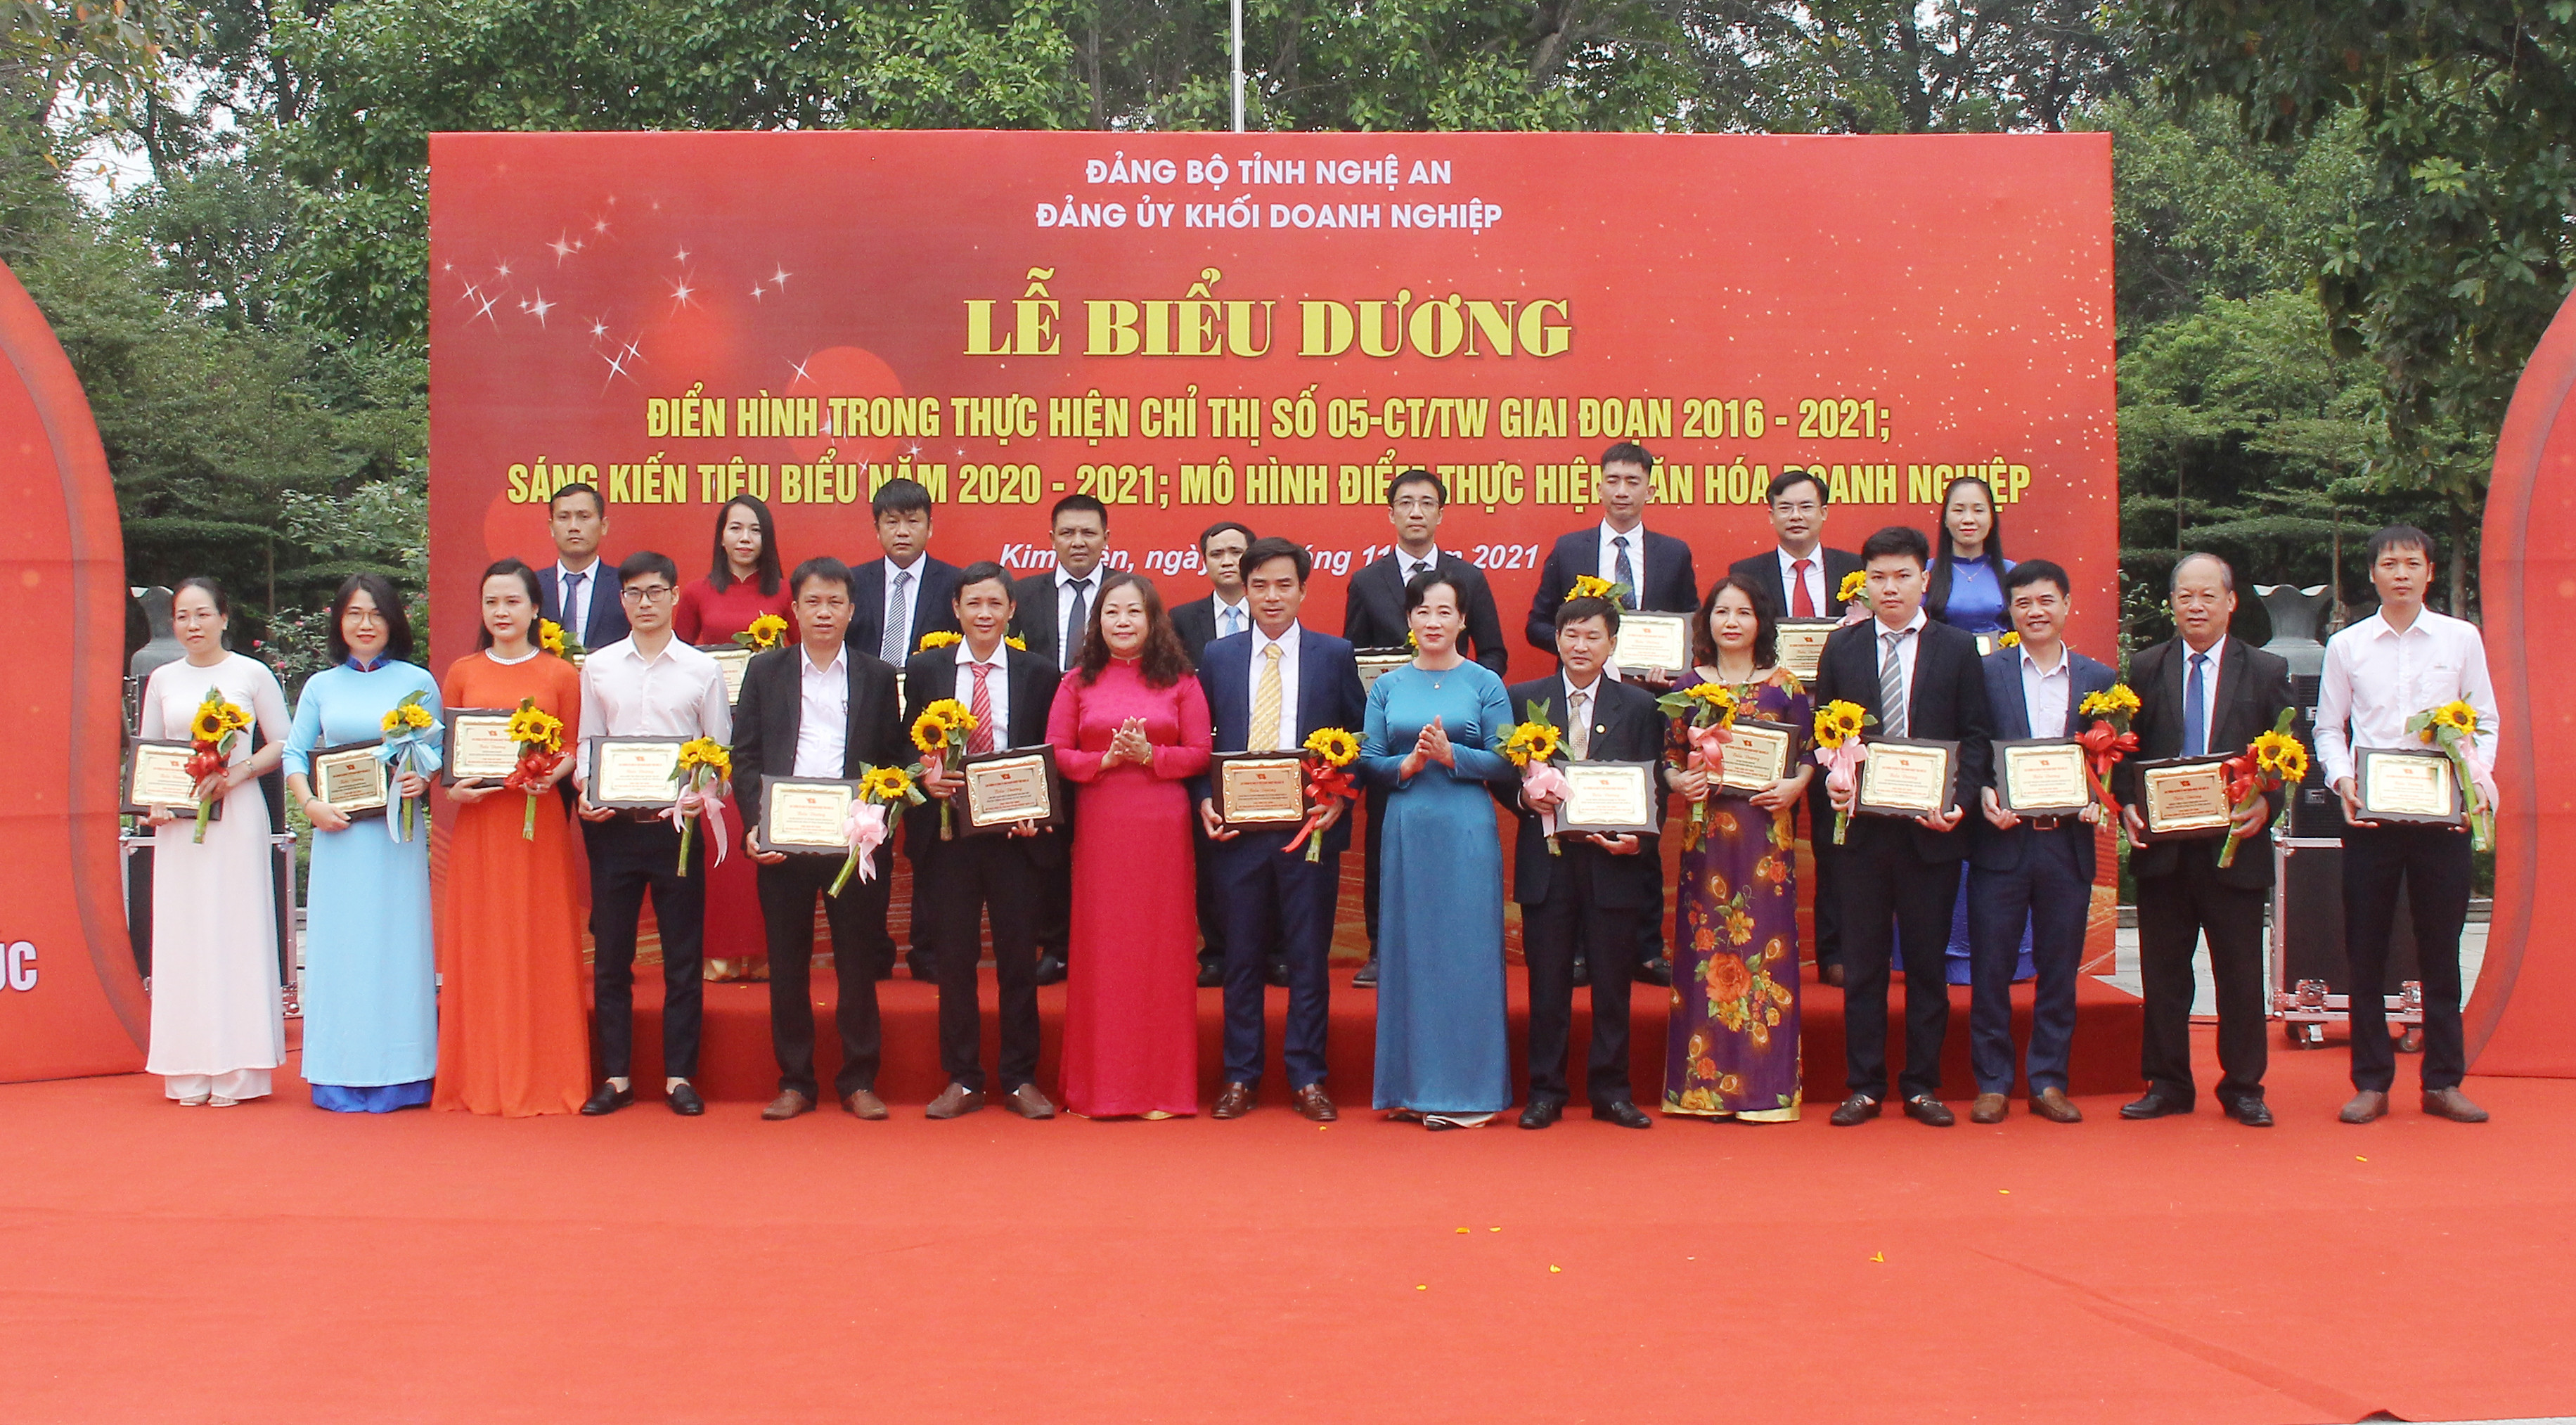 Đồng chí Nguyễn Thị Thi Hường và đồng chí Phan Thị Hoan tặng hoa chúc mừng các điển hình trong thực hiện